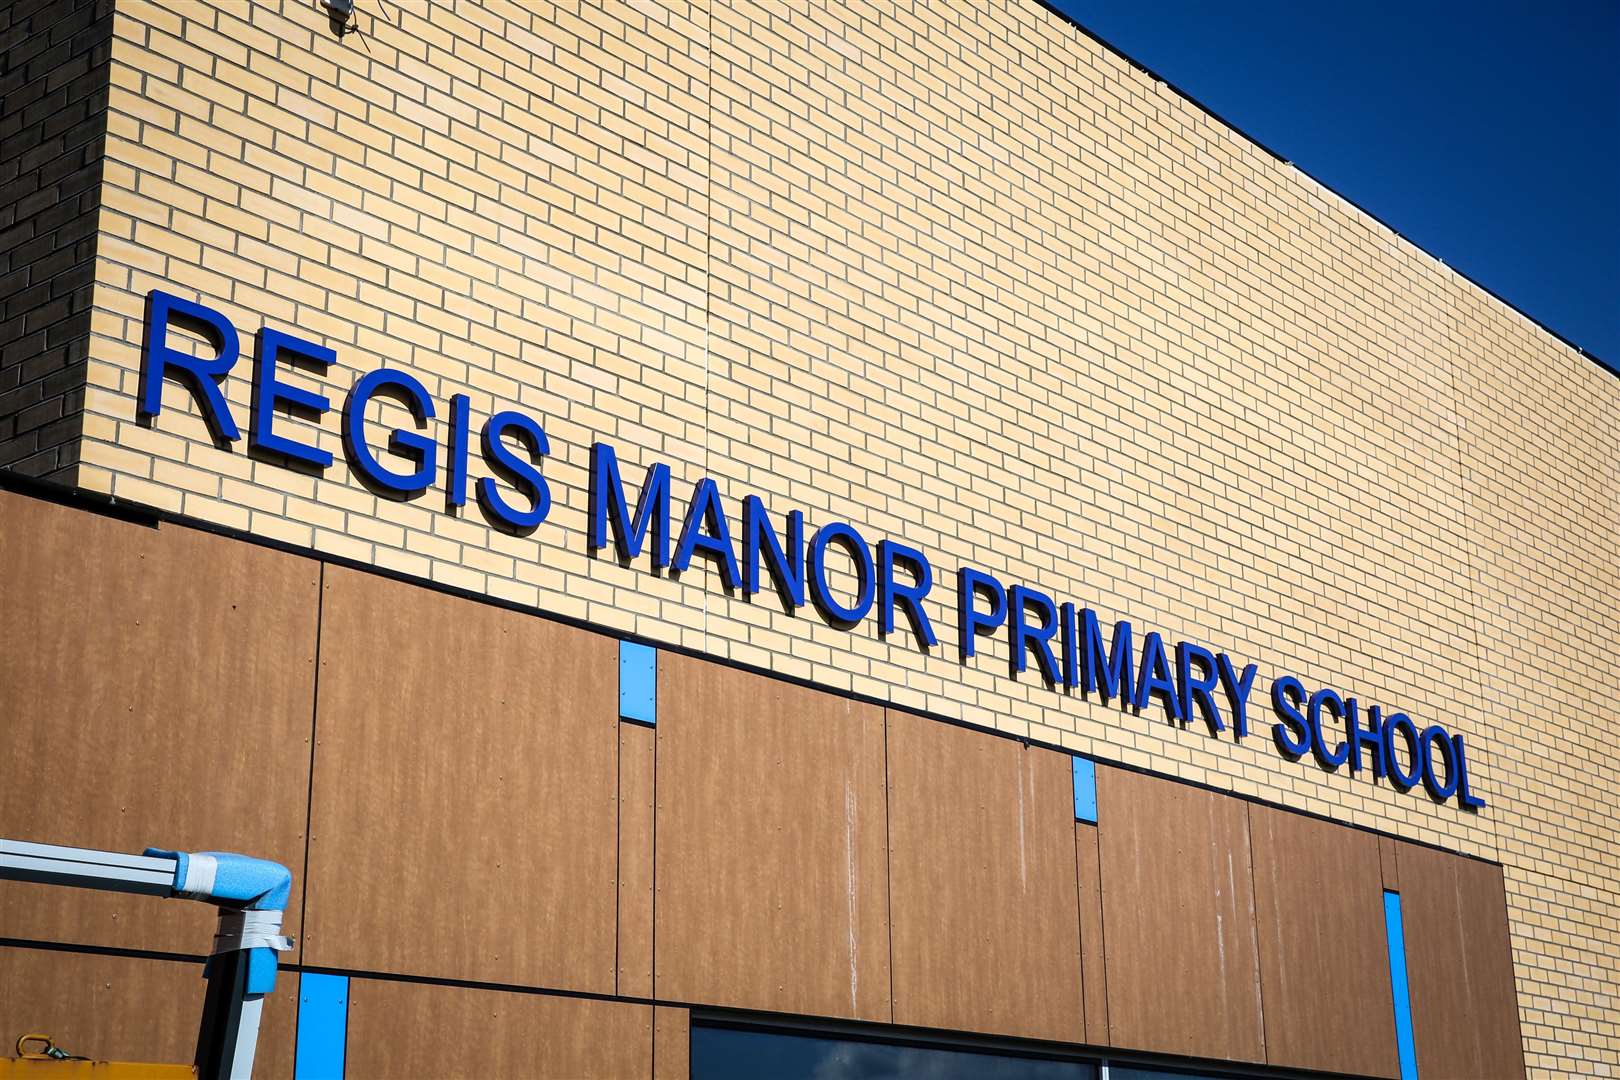 Regis Manor Primary School in Sittingbourne. Picture: Matthew Walker